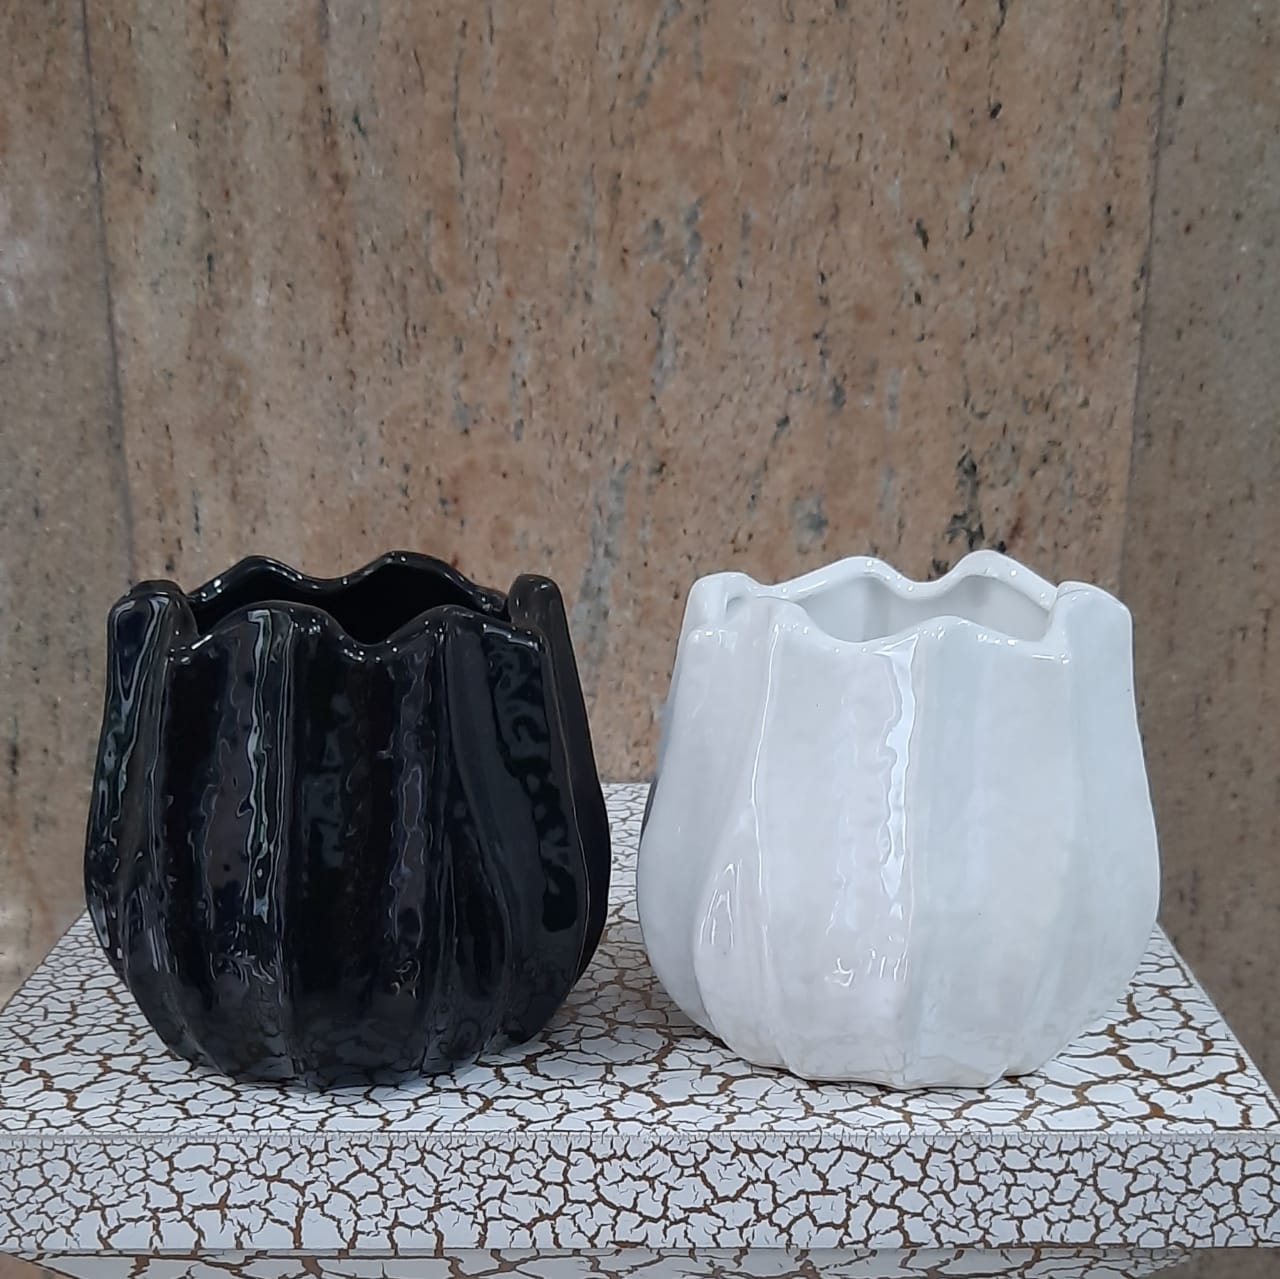 10cm Glazed Ceramic Base - Green Gardens Mihiliya (Pvt) Ltd